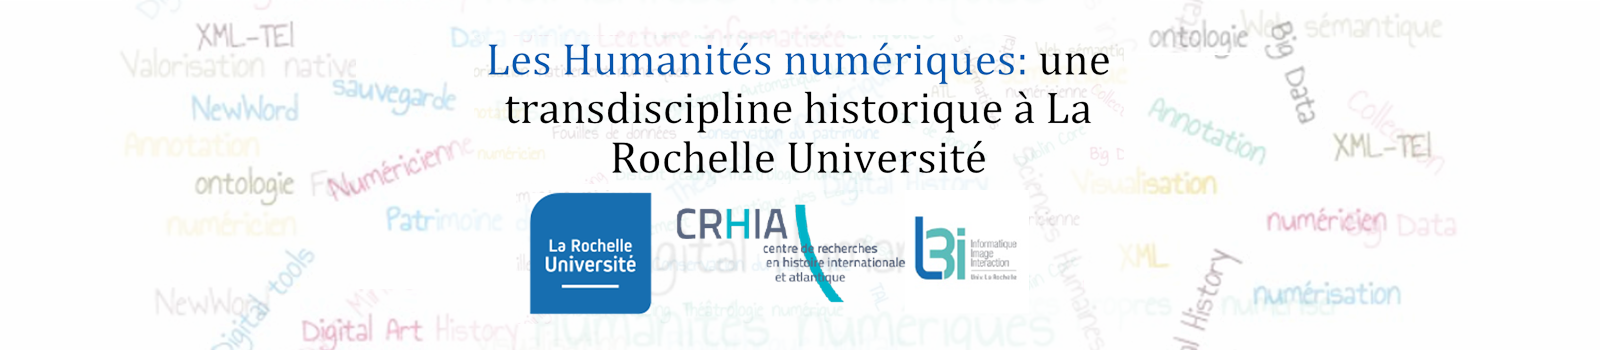 Les Humanités numériques : une transdiscipline historique à La Rochelle Université